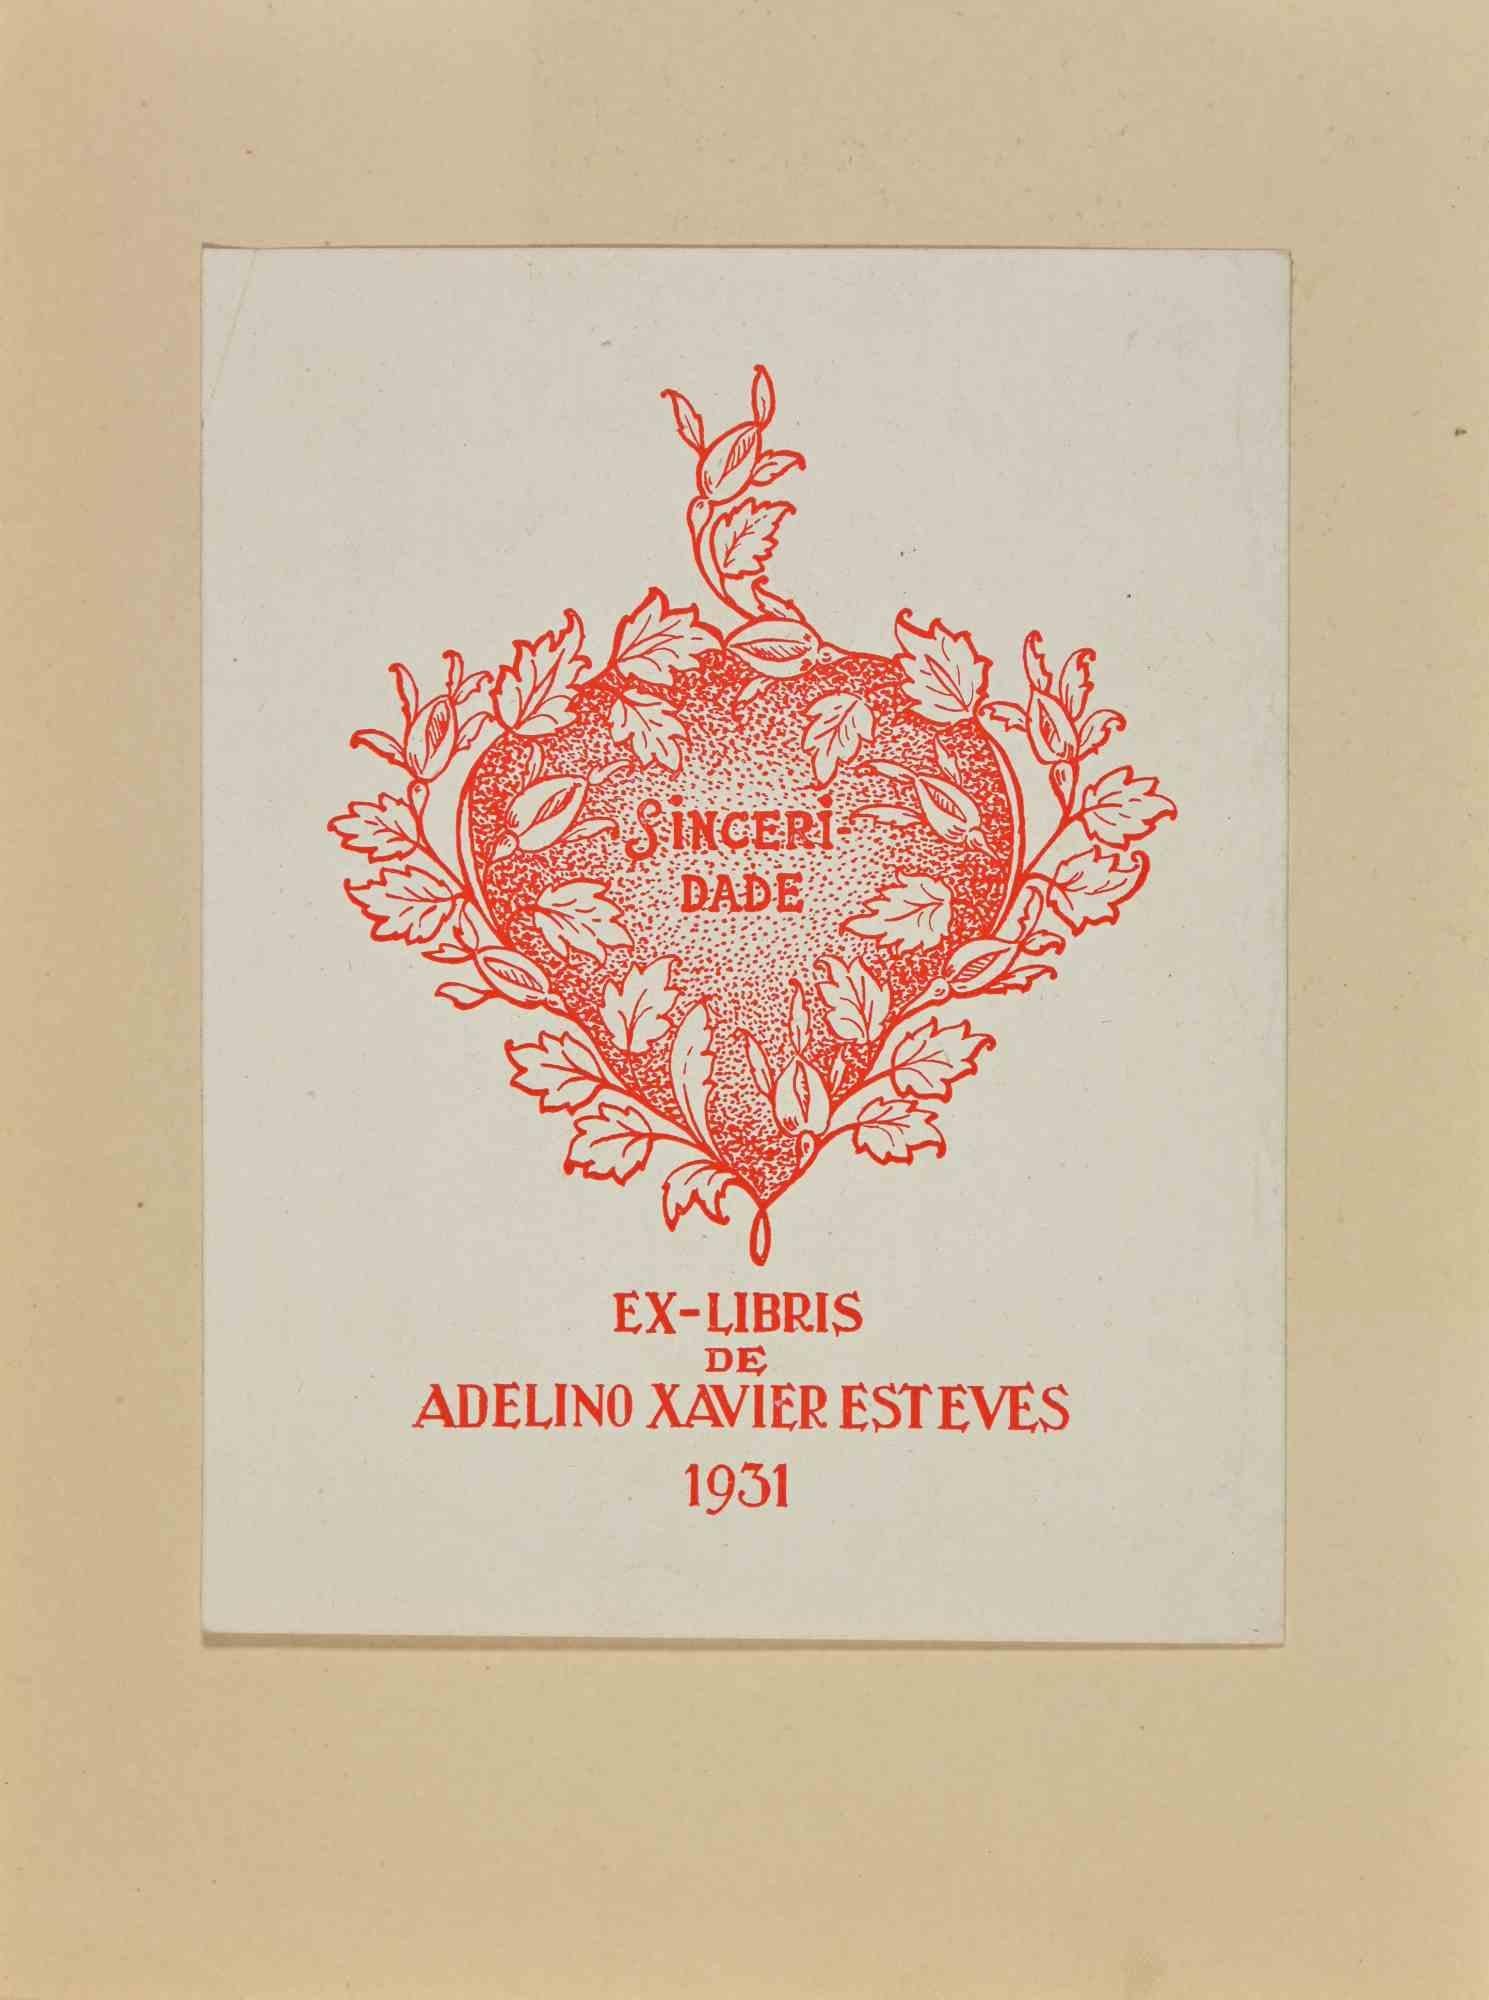 Ex-Libris de Adelino Xavier Esteves ist ein Kunstwerk aus dem Jahr 1931 von Adelino Xavier Esteves

Holzschnitt auf Papier. Das Werk ist aufgeklebt  Elfenbeinkarton. 

Abmessungen insgesamt: 21 x 15 cm.

Gute Bedingungen.

Das Kunstwerk